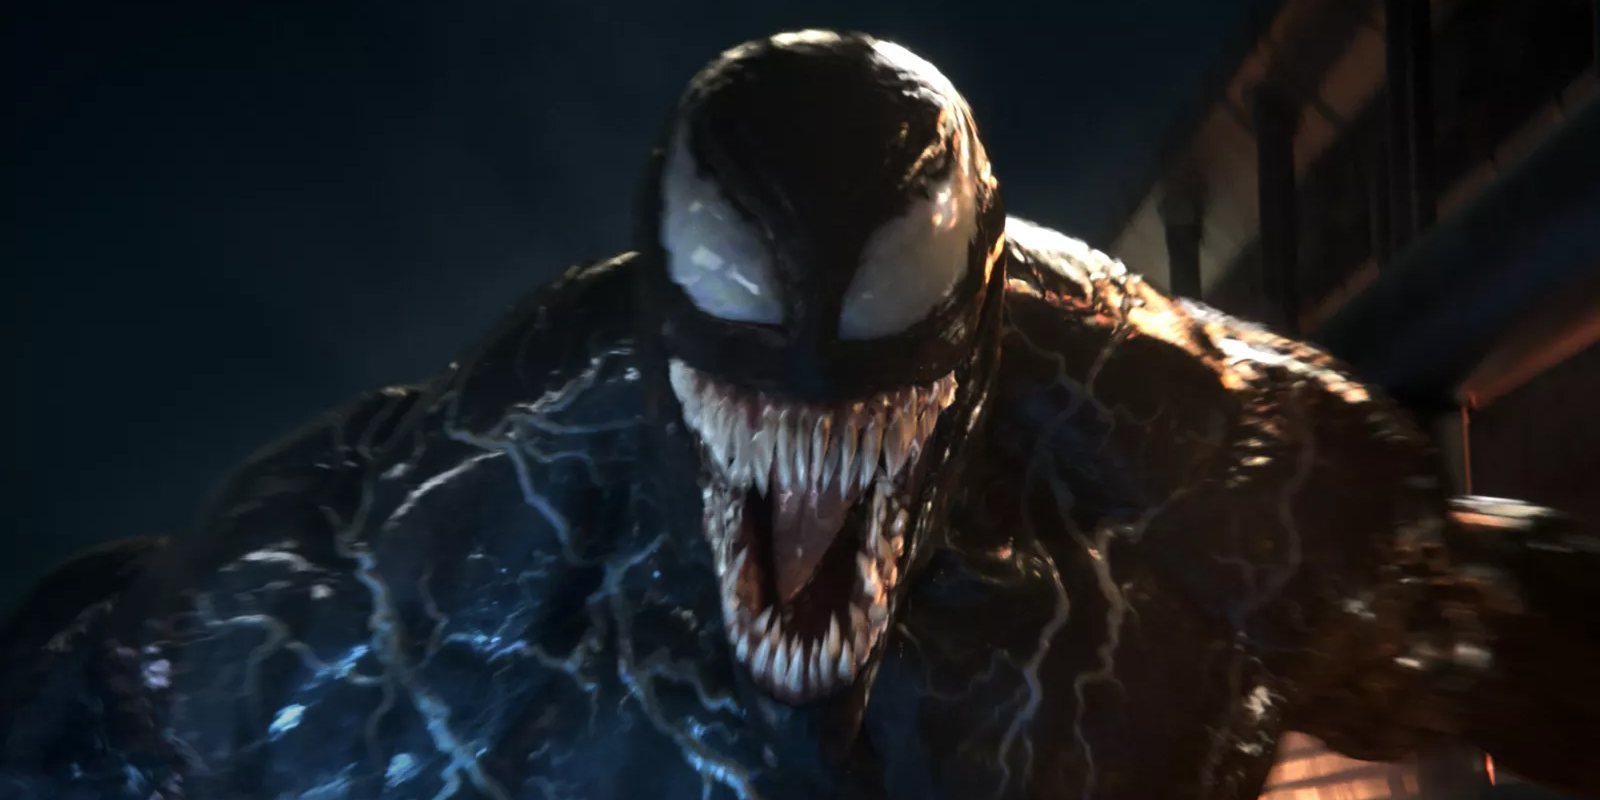 Las primeras impresiones de 'Venom' aseguran que es divertida